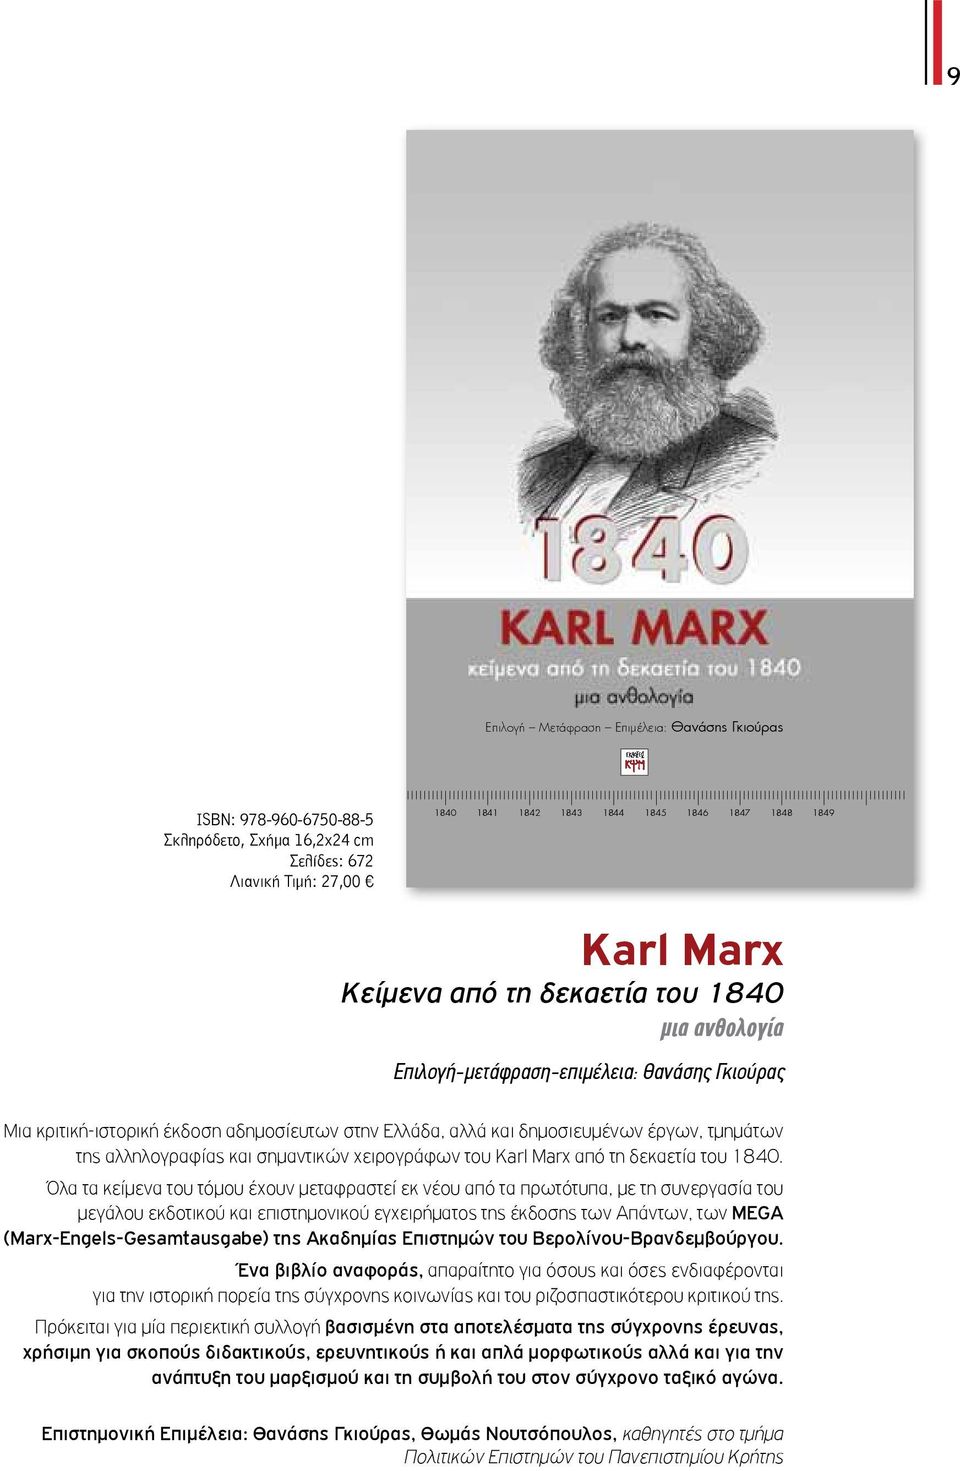 Όλα τα κείμενα του τόμου έχουν μεταφραστεί από τα πρωτότυπα, με τη συνεργασία του μεγάλου εκδοτικού και επιστημονικού εγχειρήματος της έκδοσης ν Απάντων, των MEGA (Marx-Engels-Gesamtausgabe)